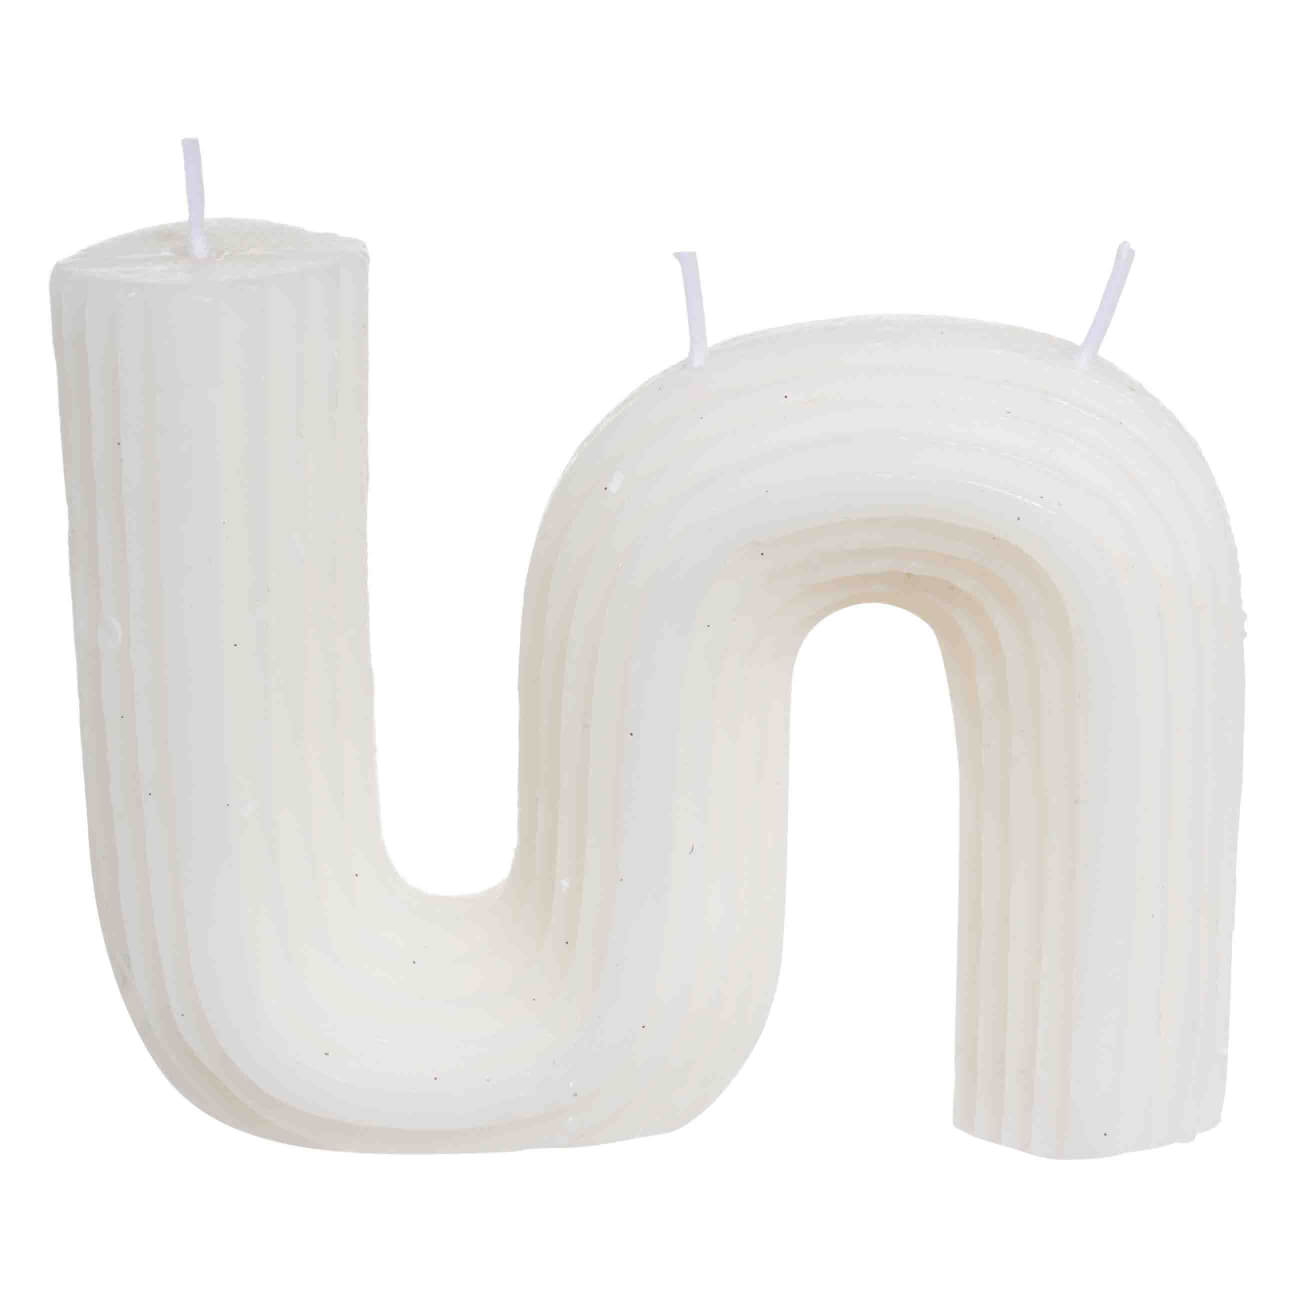 Свеча, 9 см, рифленая, белая, Зигзаг, Ribbed candle свеча формовая